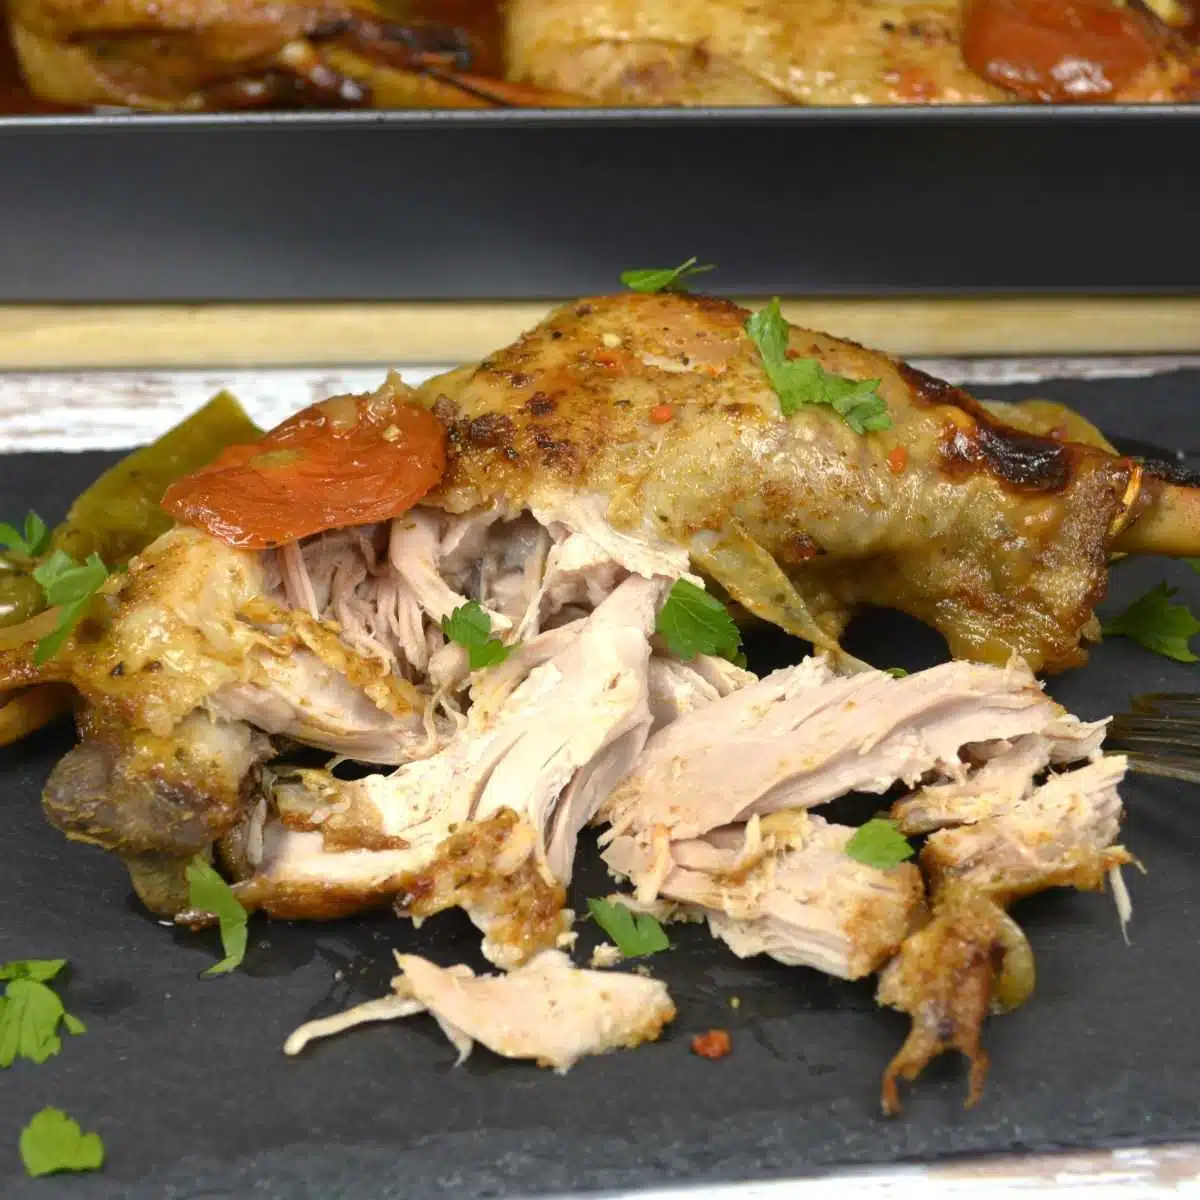 Slow Roasted Turkey Legs-Served on Platter